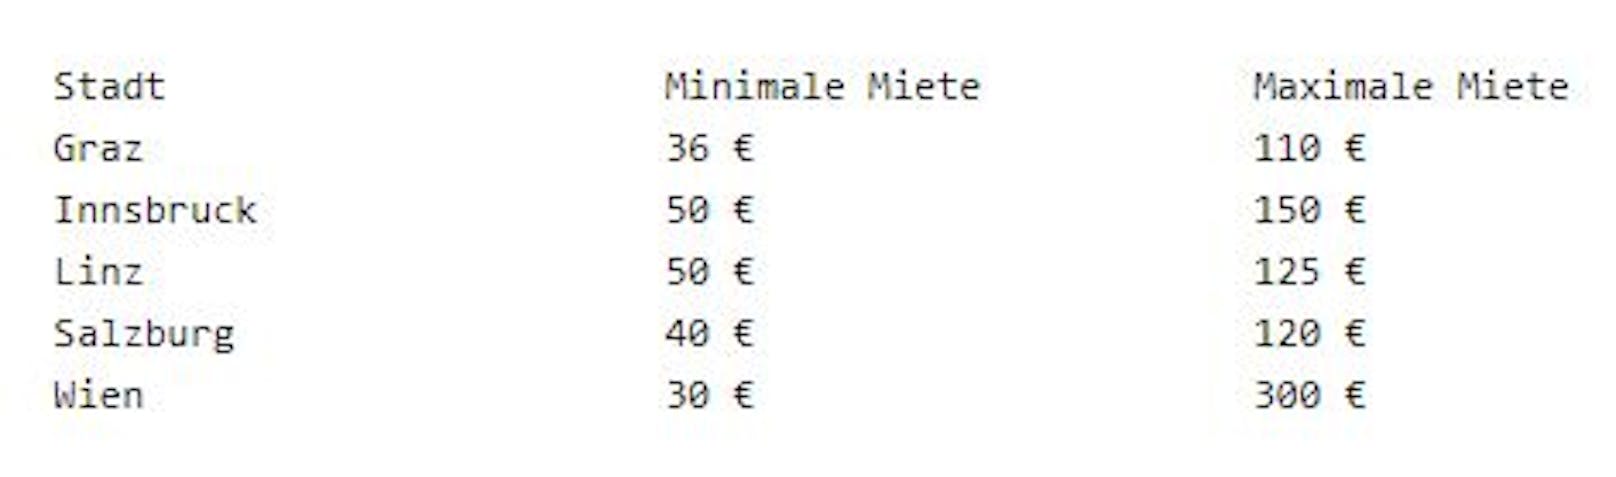 Minimal- und Maximalmietpreise aus dem Jahr 2020 für Stell- und Garagenplätze in österreichischen Städten im Überblick: